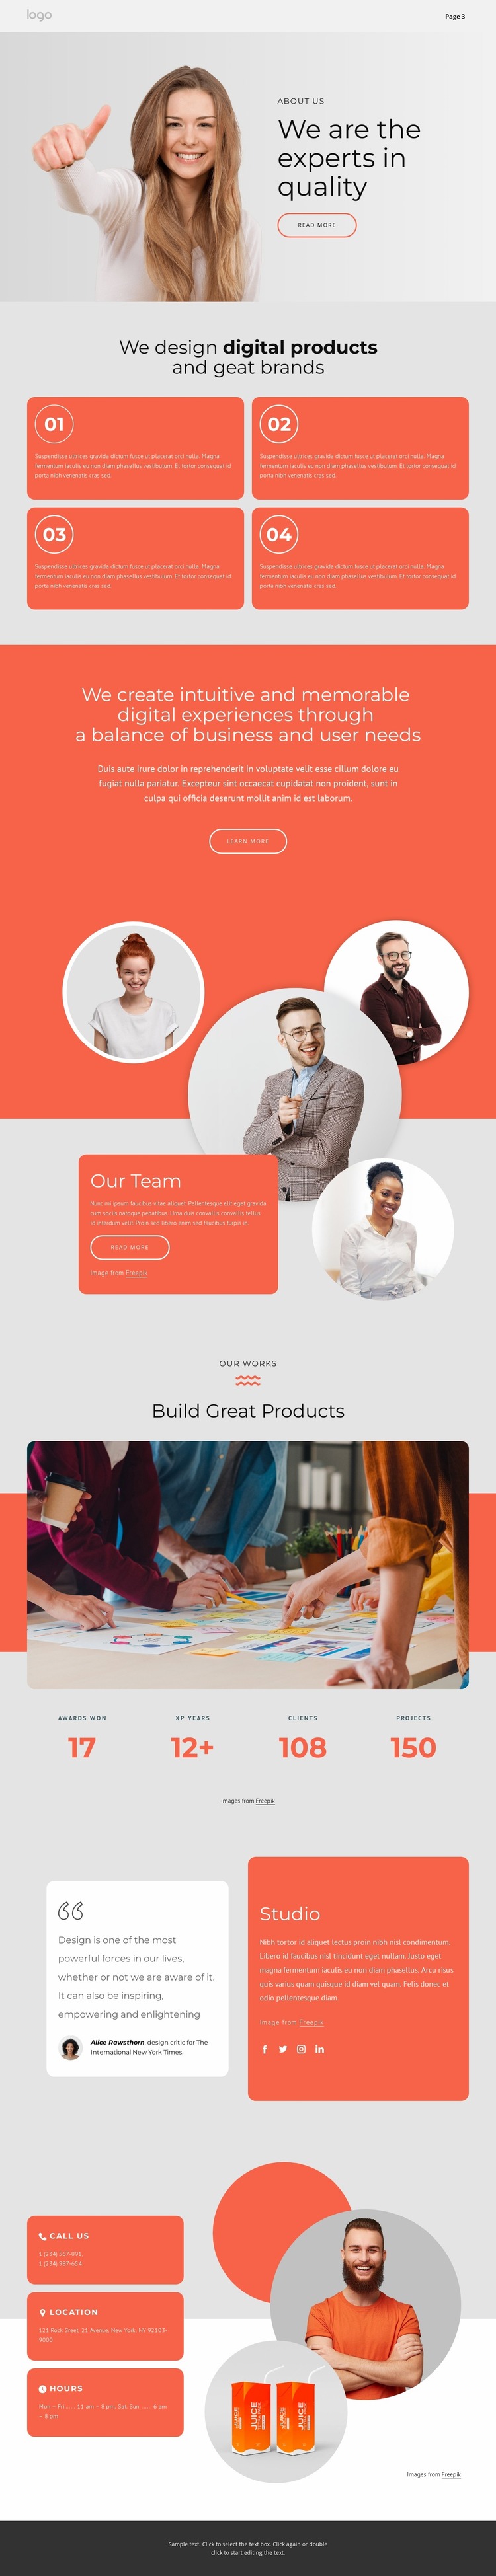 We design great brands Website Mockup